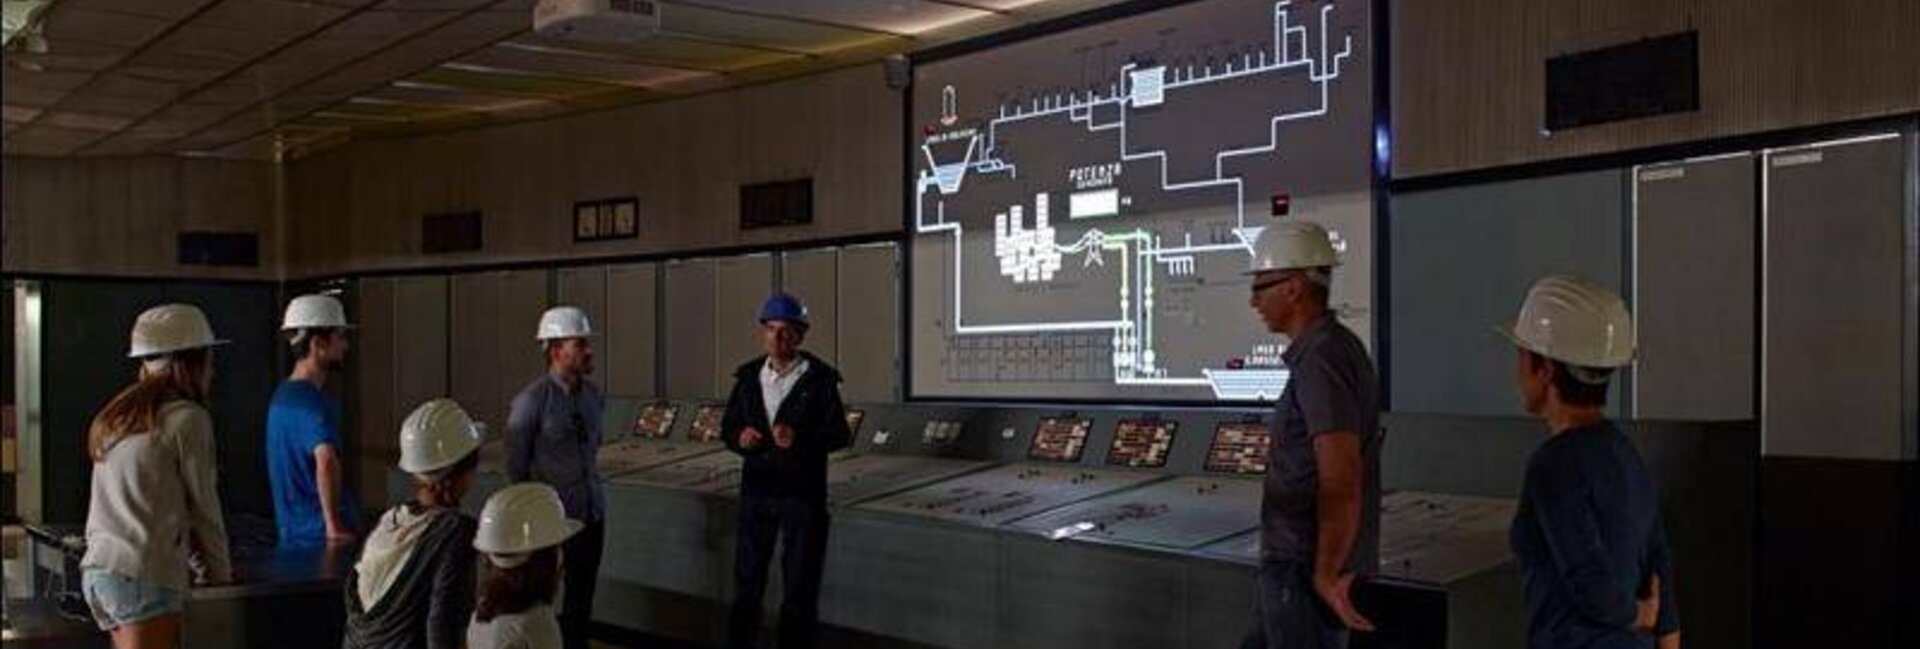 sala controllo, centrale idroelettrica di Santa Massenza Gruppo Dolomiti Energia